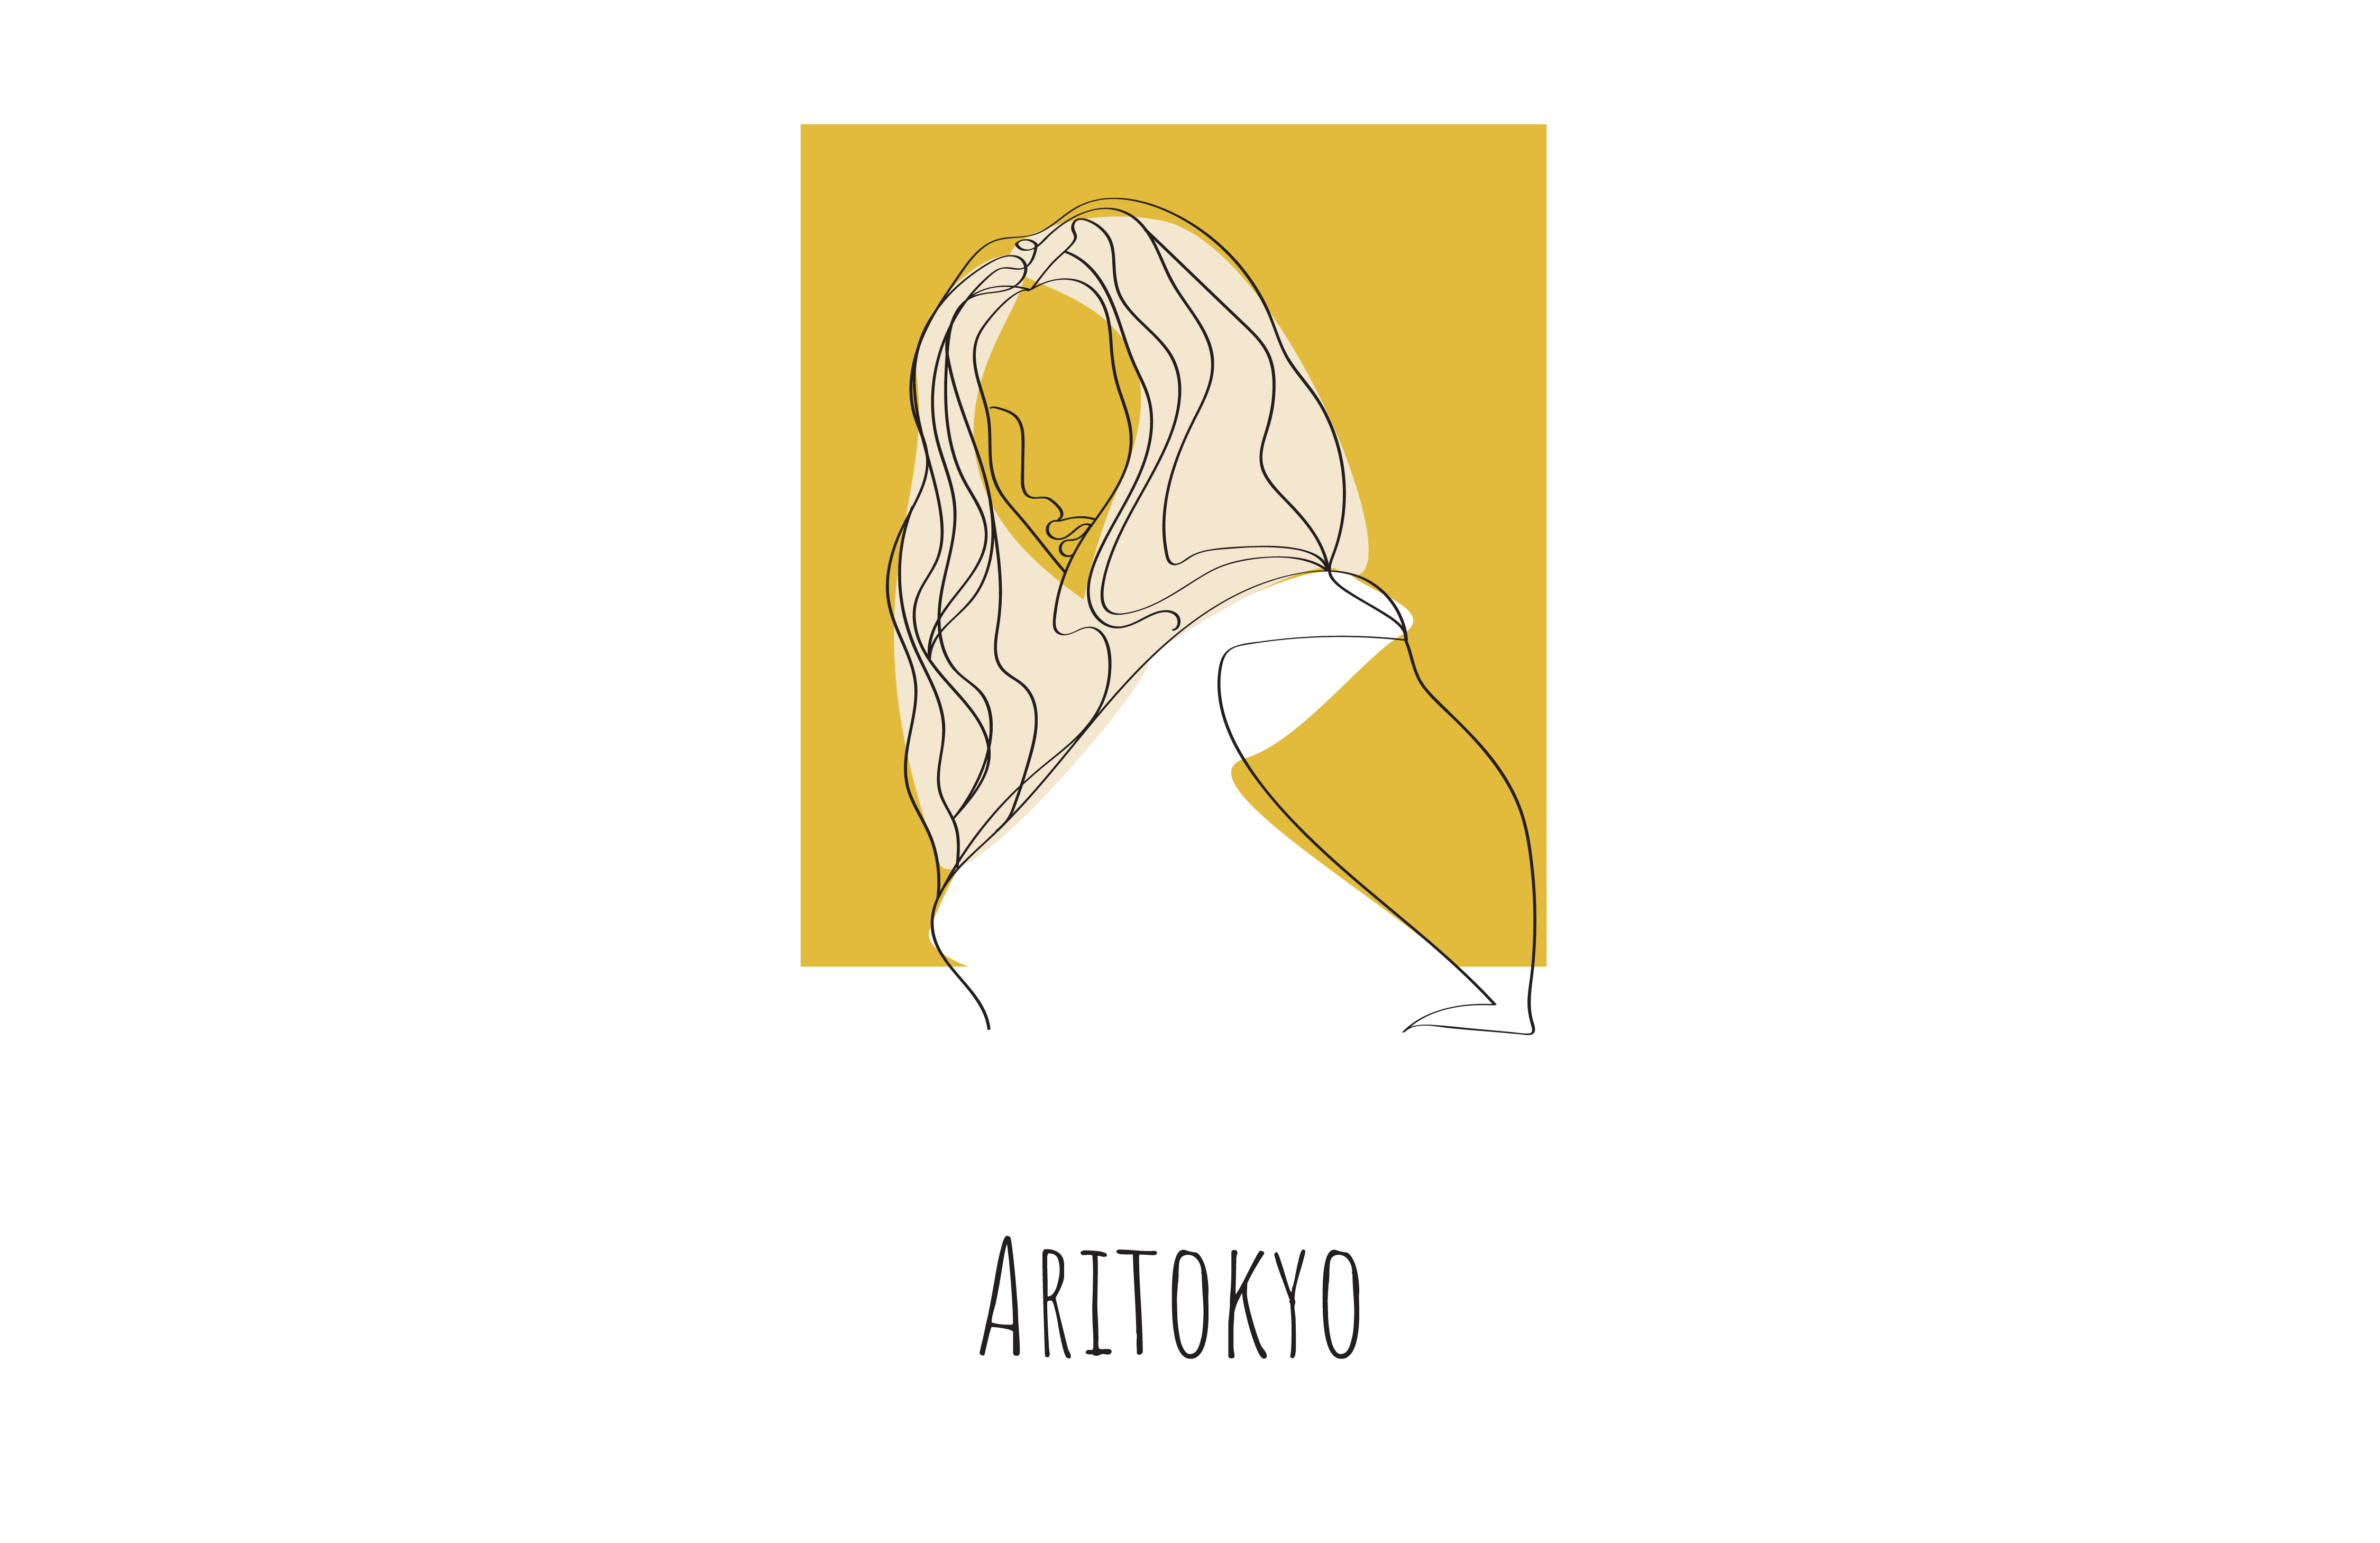 Aritokyo